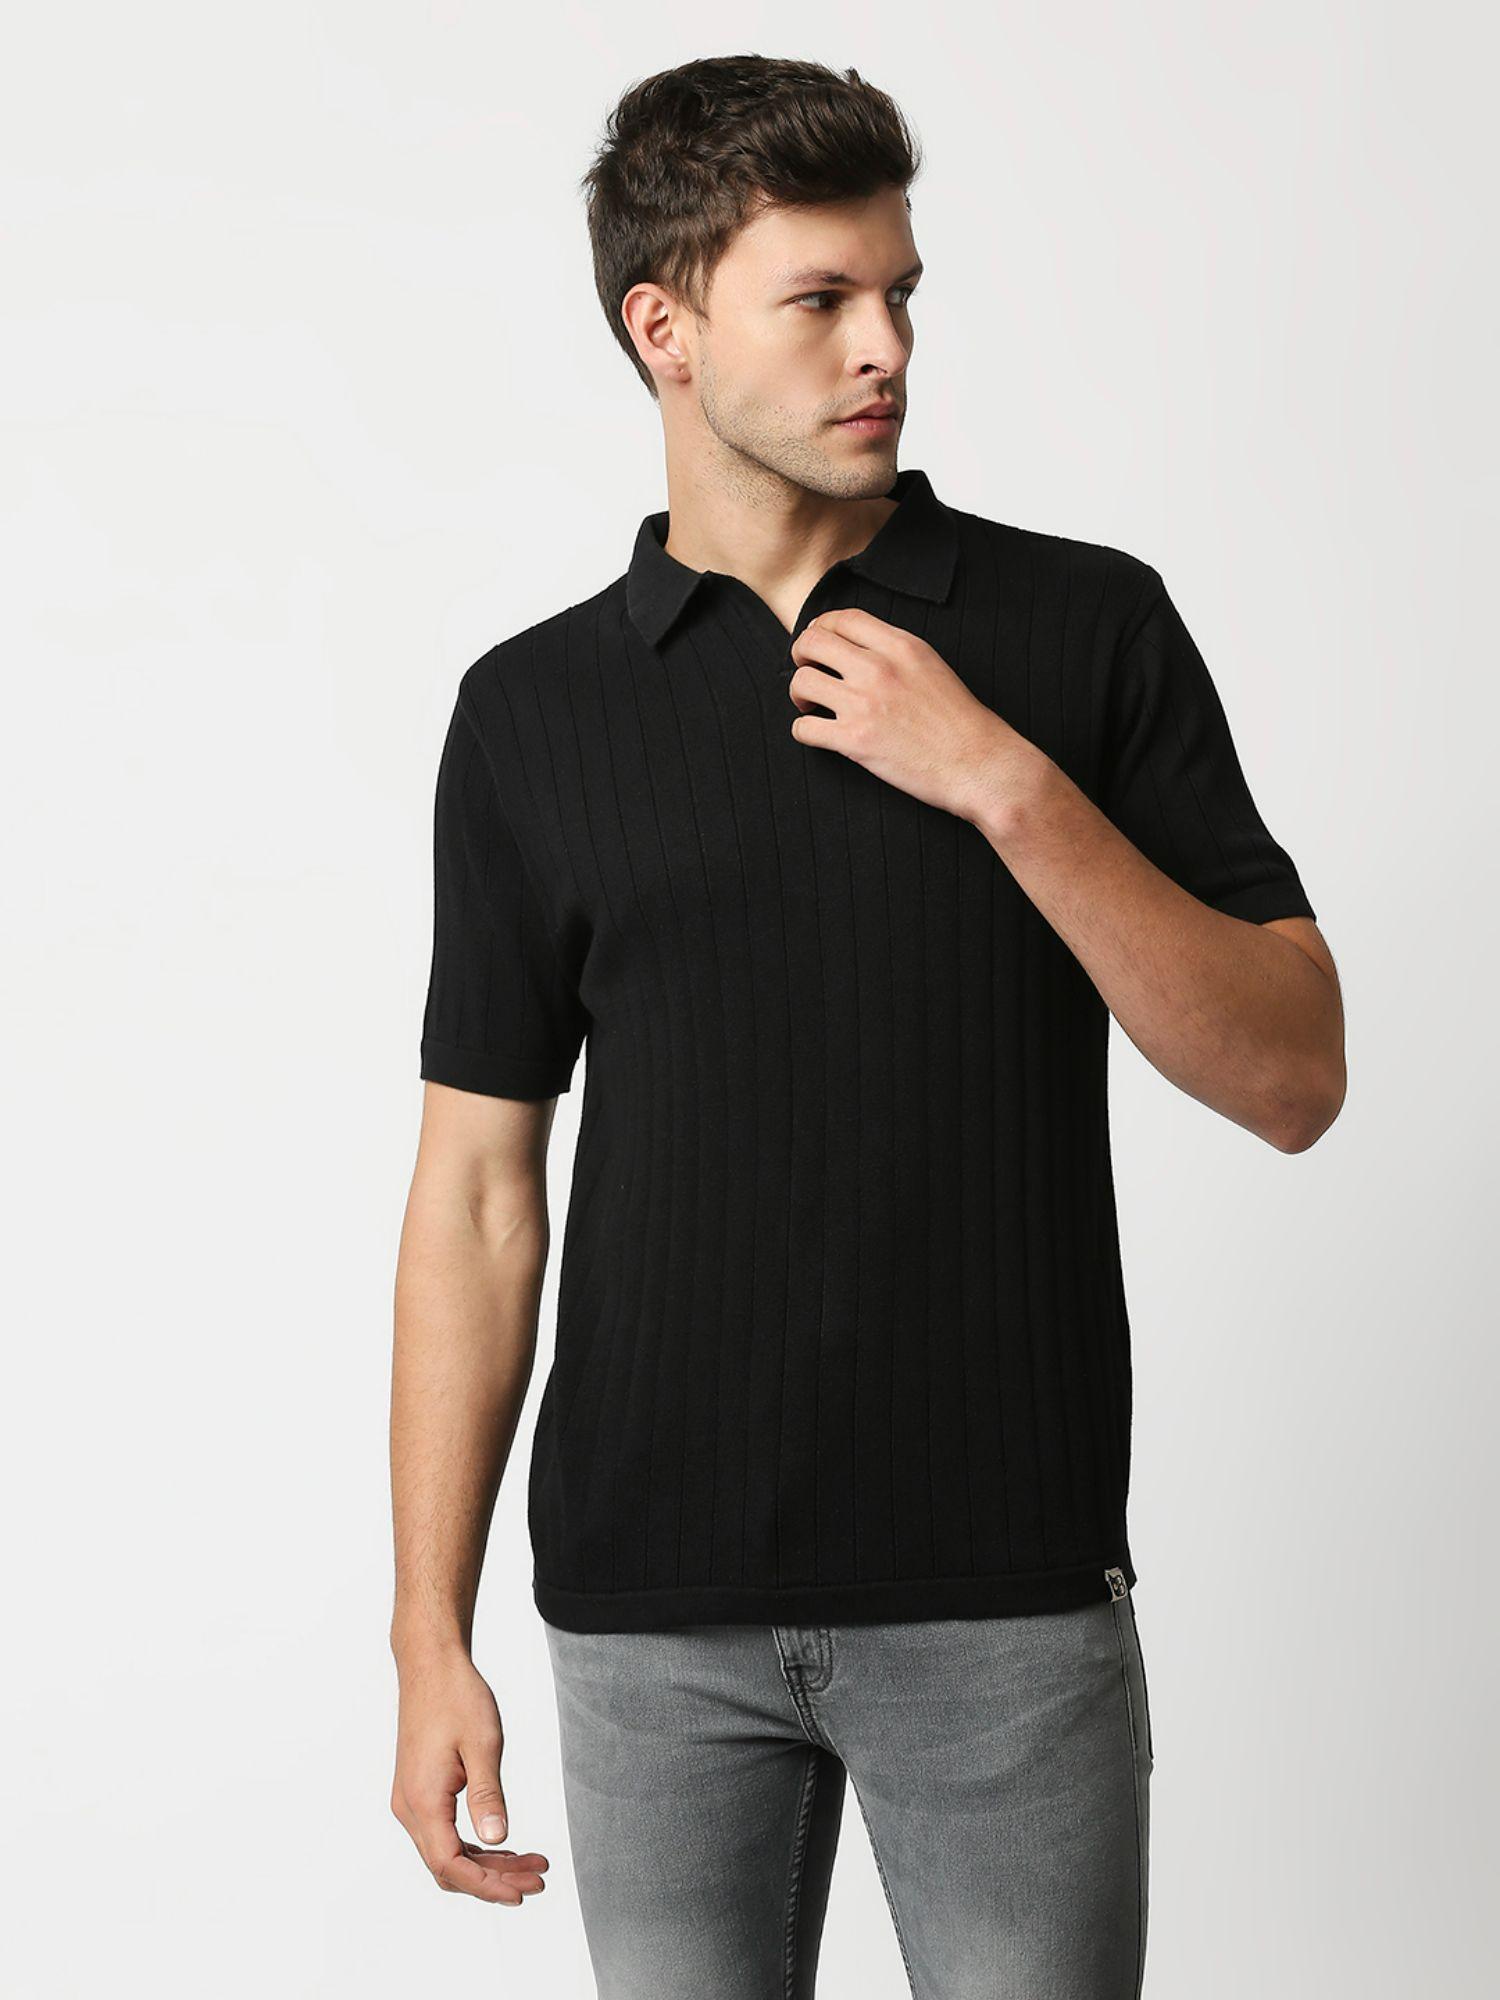 mens black flat knit short sleeves slim fit polo tshirt